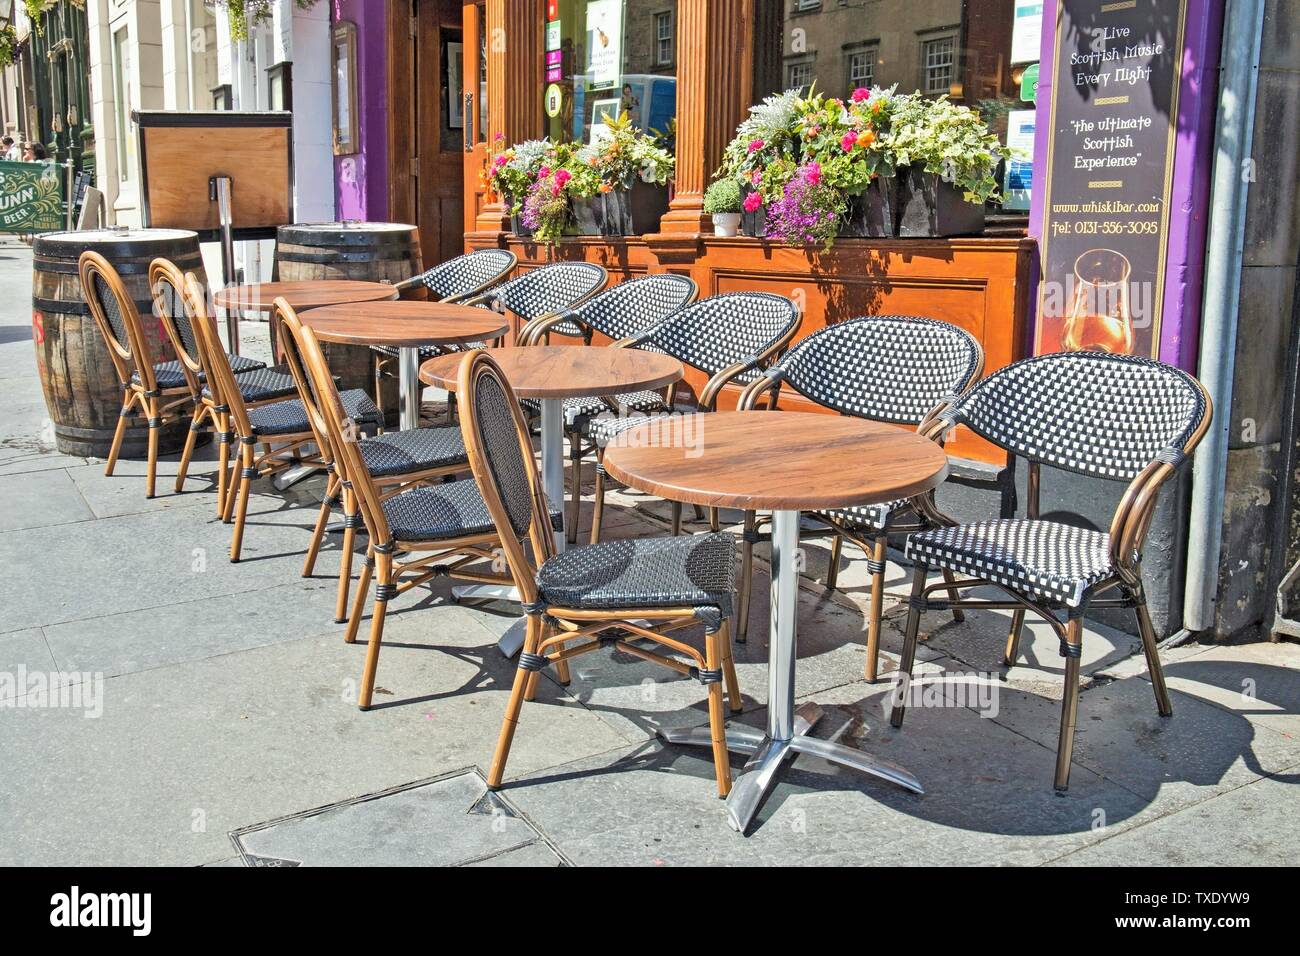 Restaurant Tische und Stühle auf Pflaster, Edinburgh, UK, Vereinigtes Königreich Stockfoto